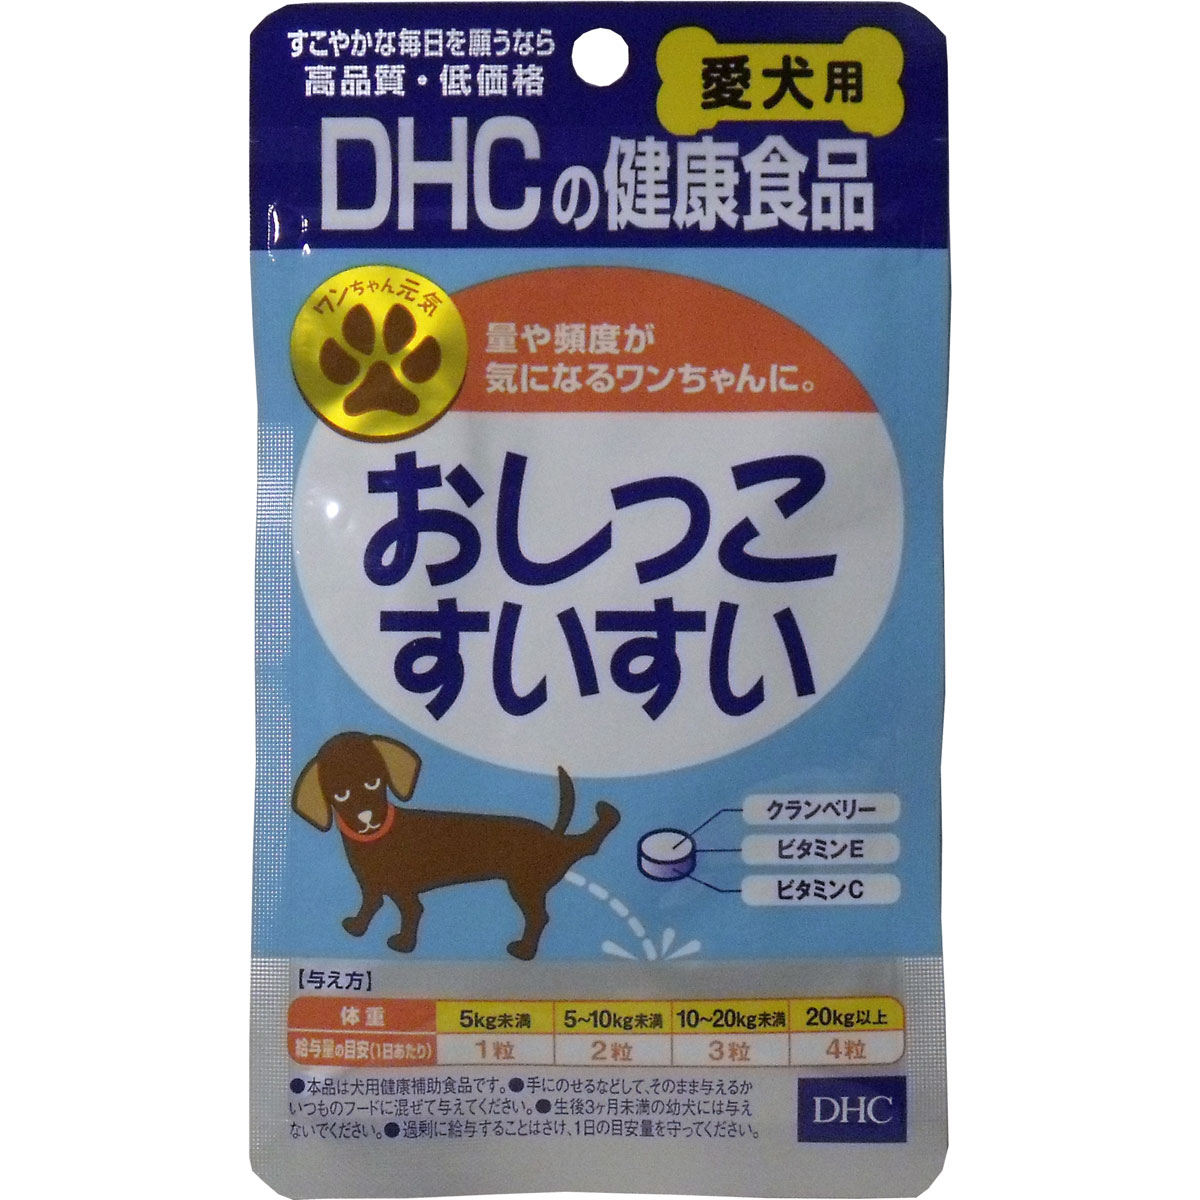 楽天市場 Dhc 愛犬用 おしっこすいすい 60粒 Dhc ペット 爽快ドラッグ